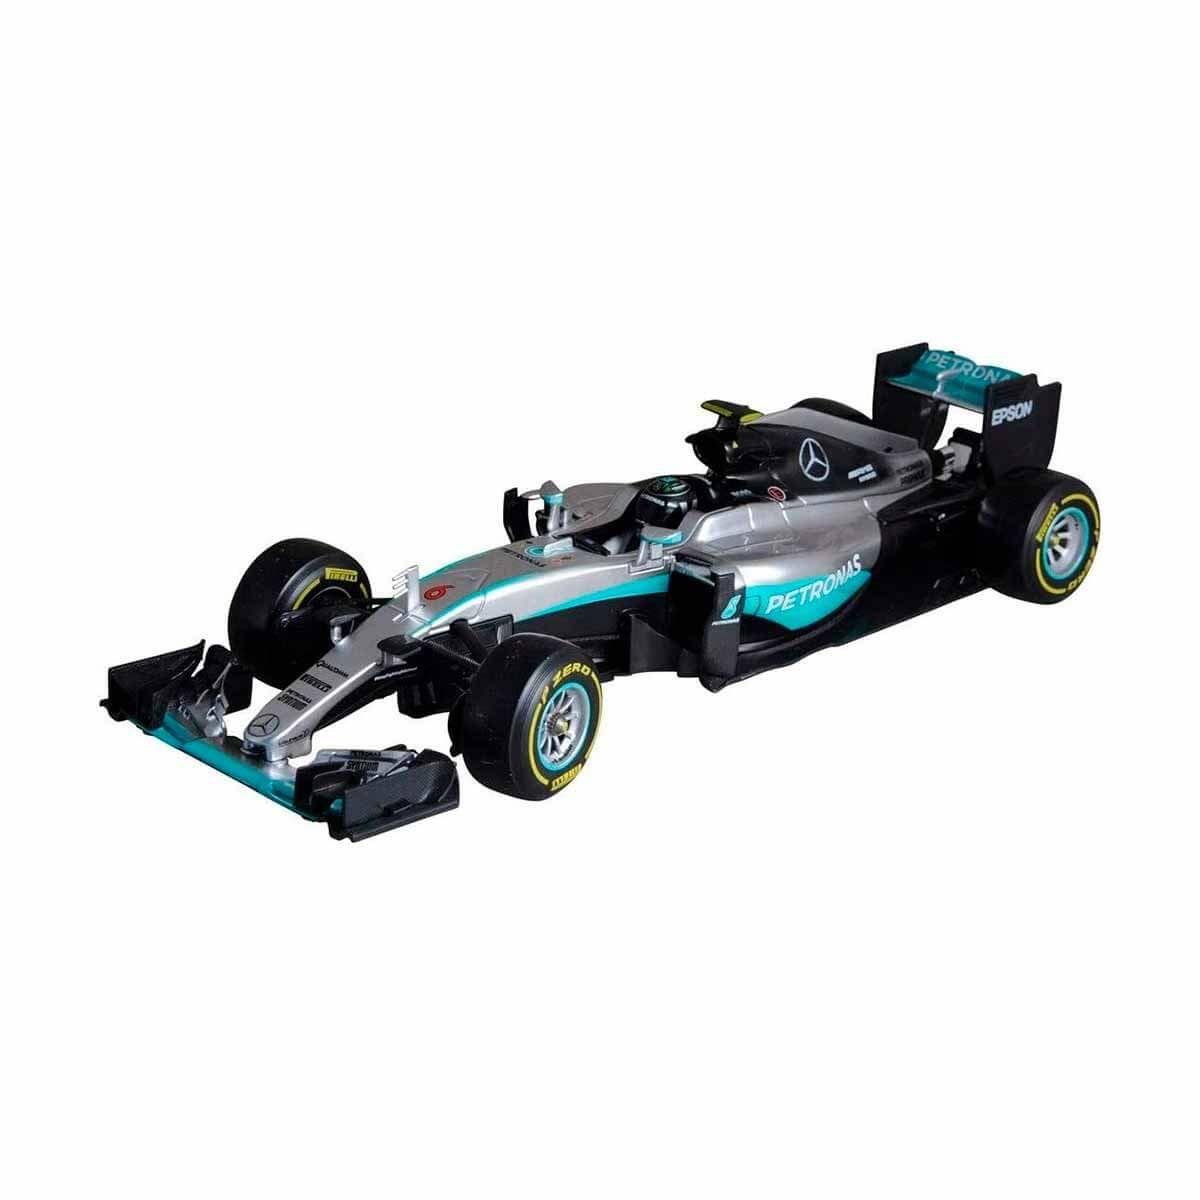 Модель 1:18 Mercedes-AMG Petronas f1 Team w07 Hybrid №44 (Lewis Hamilton). AMG f1 w07 Hybrid. Гибрид 44